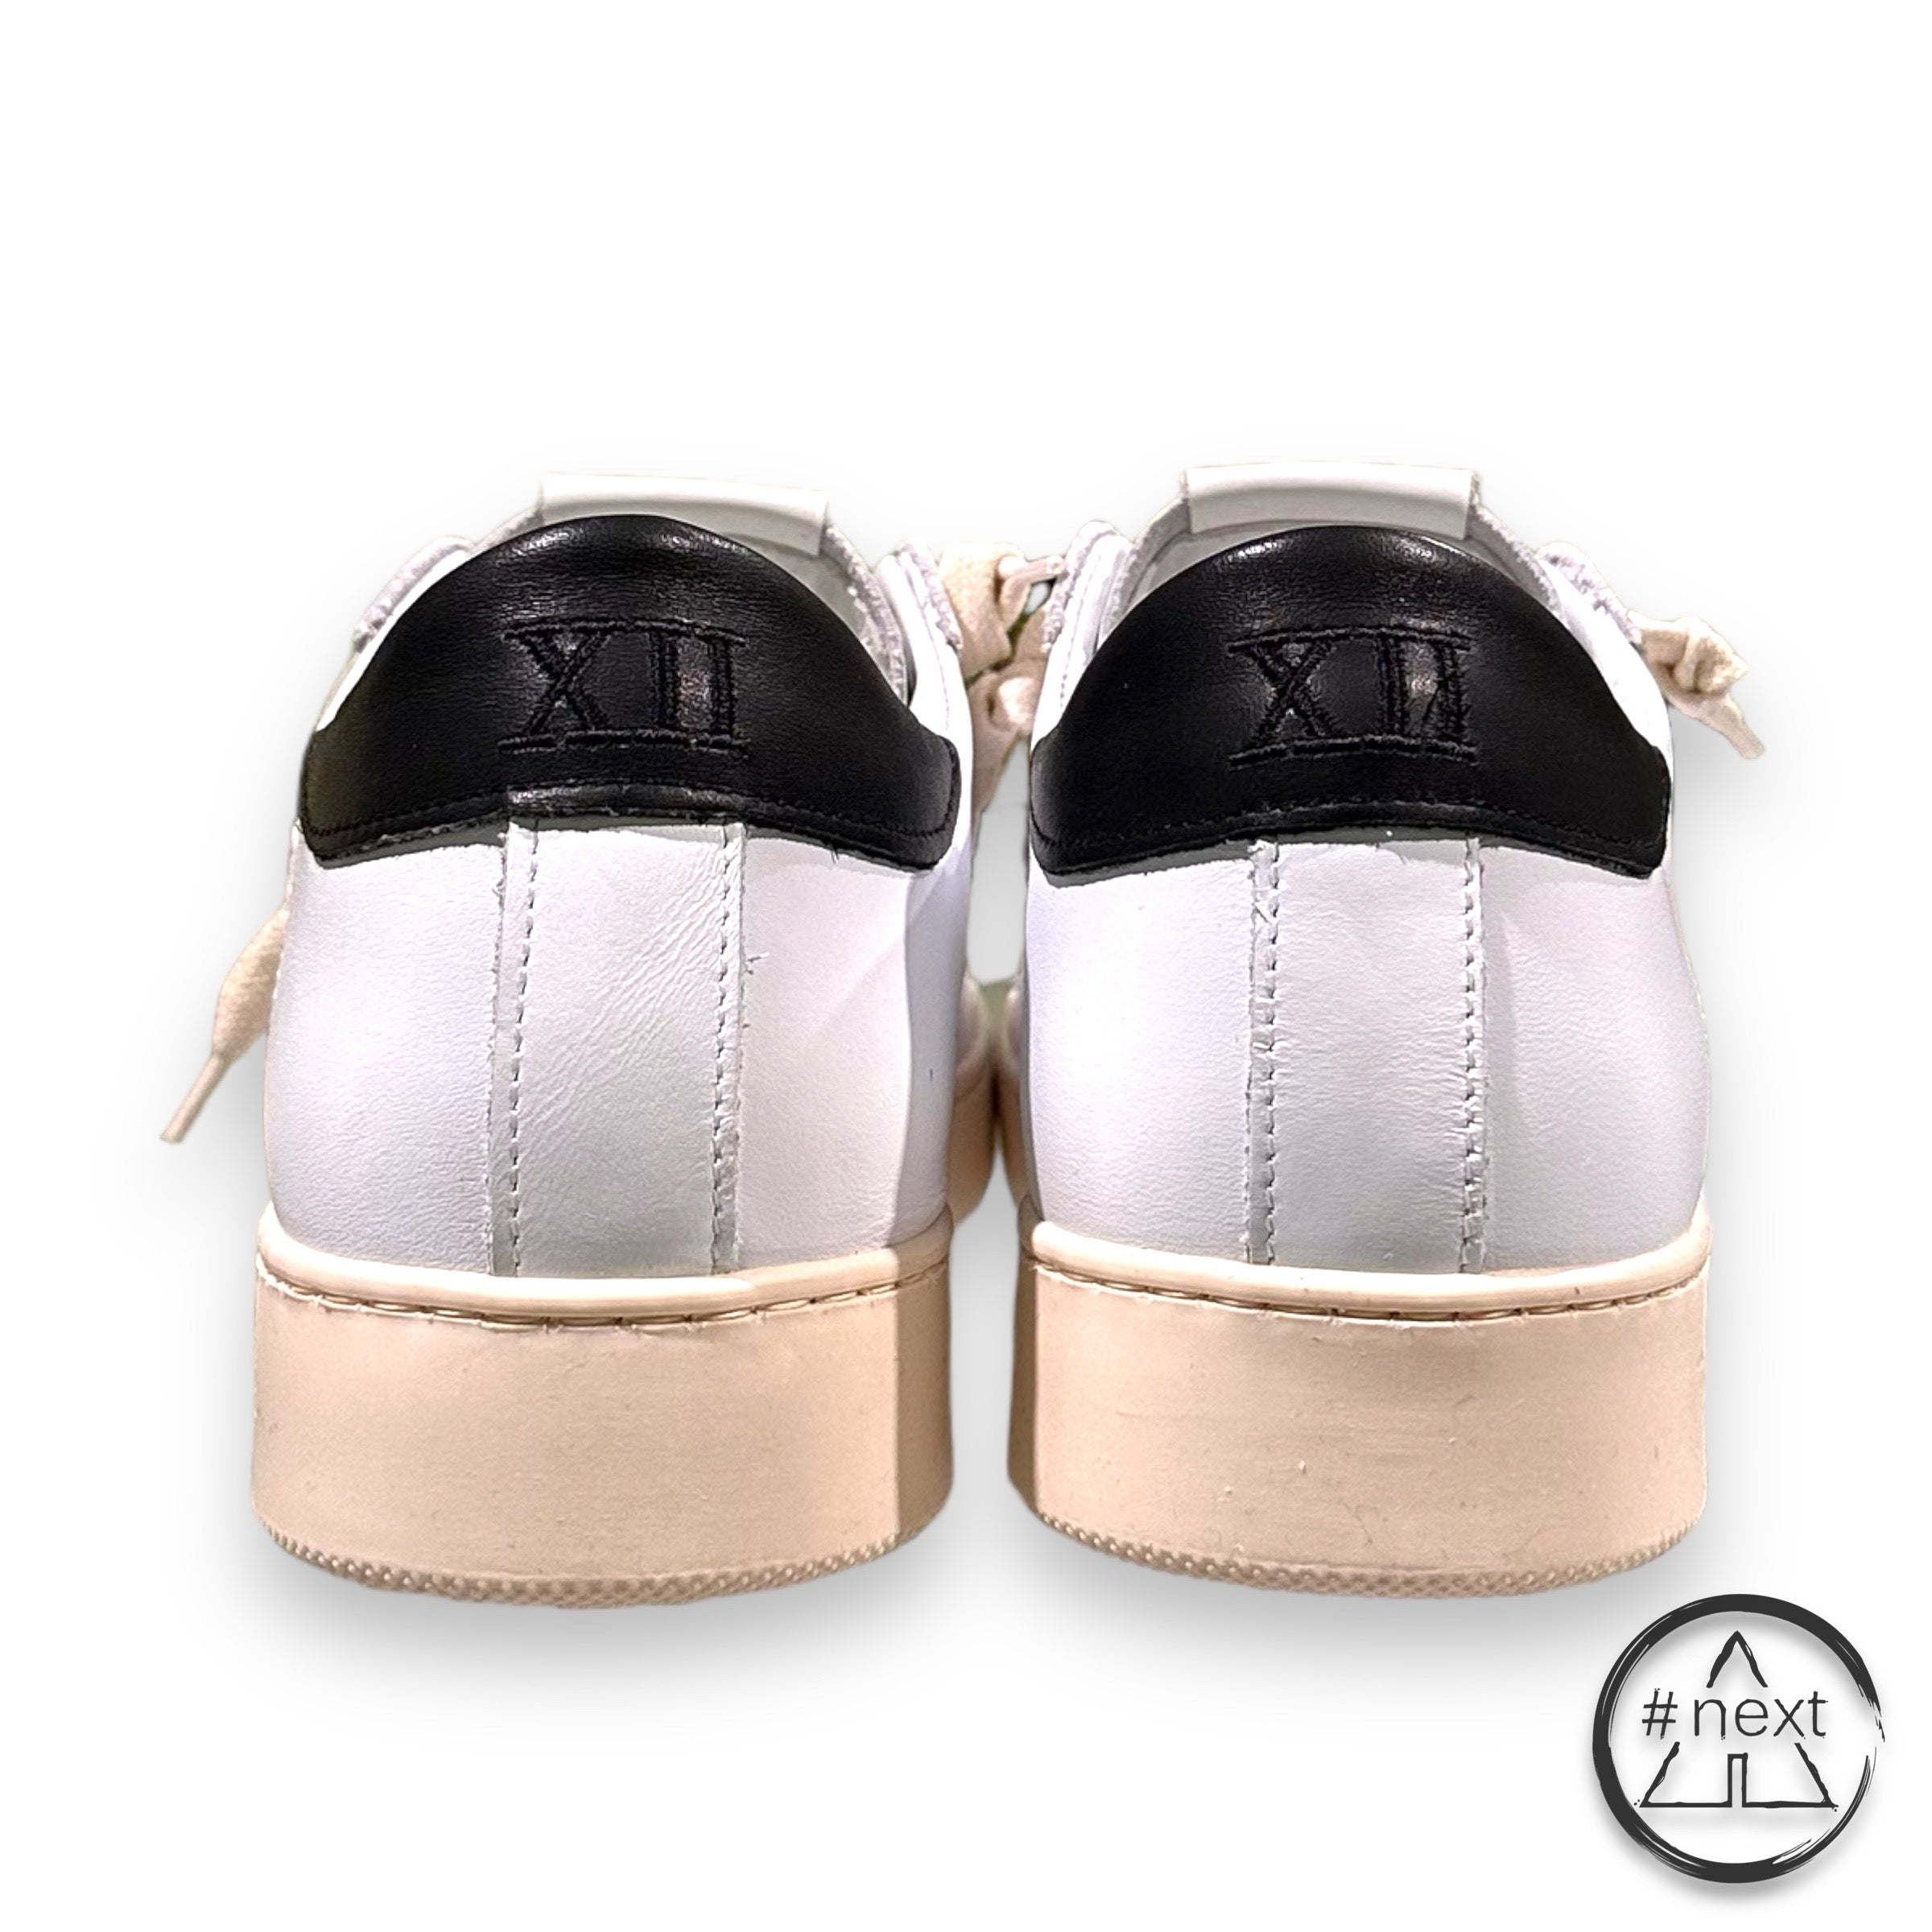 (#E) TWELVE - Sneakers CLASSIC - Bianco, Nero. - ANDY #NEXT